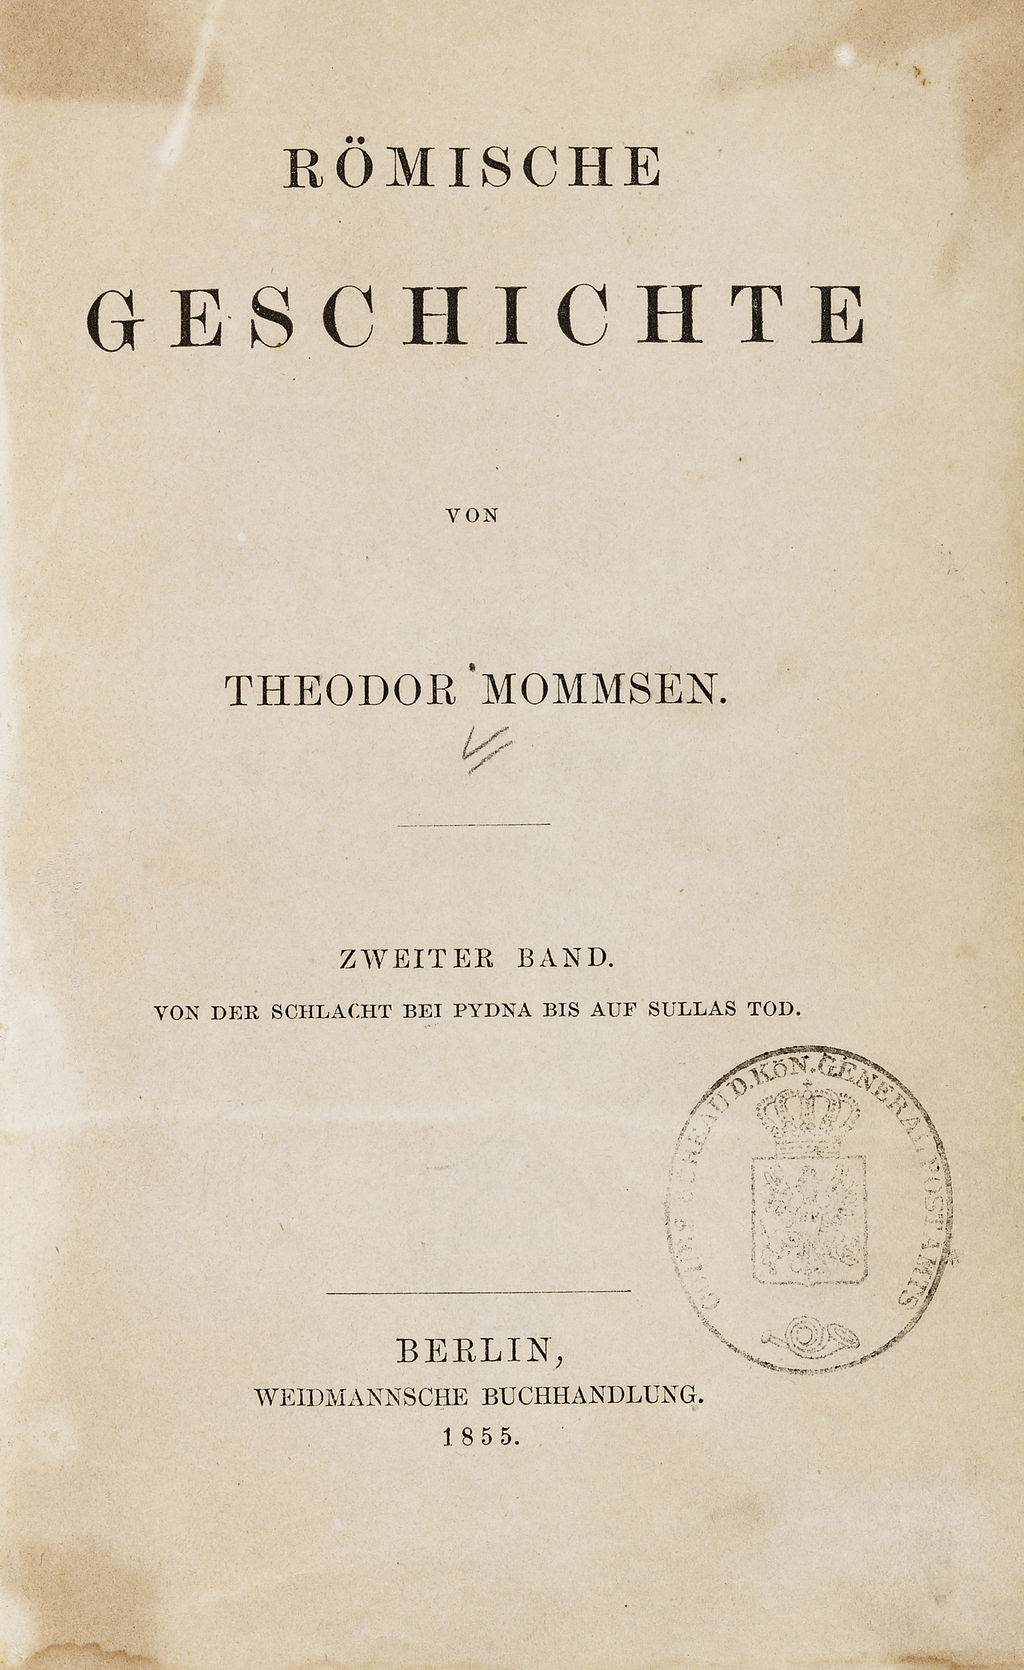 Buch: Theodor Mommsen, Römische Geschichte, Bd. 2, 1855